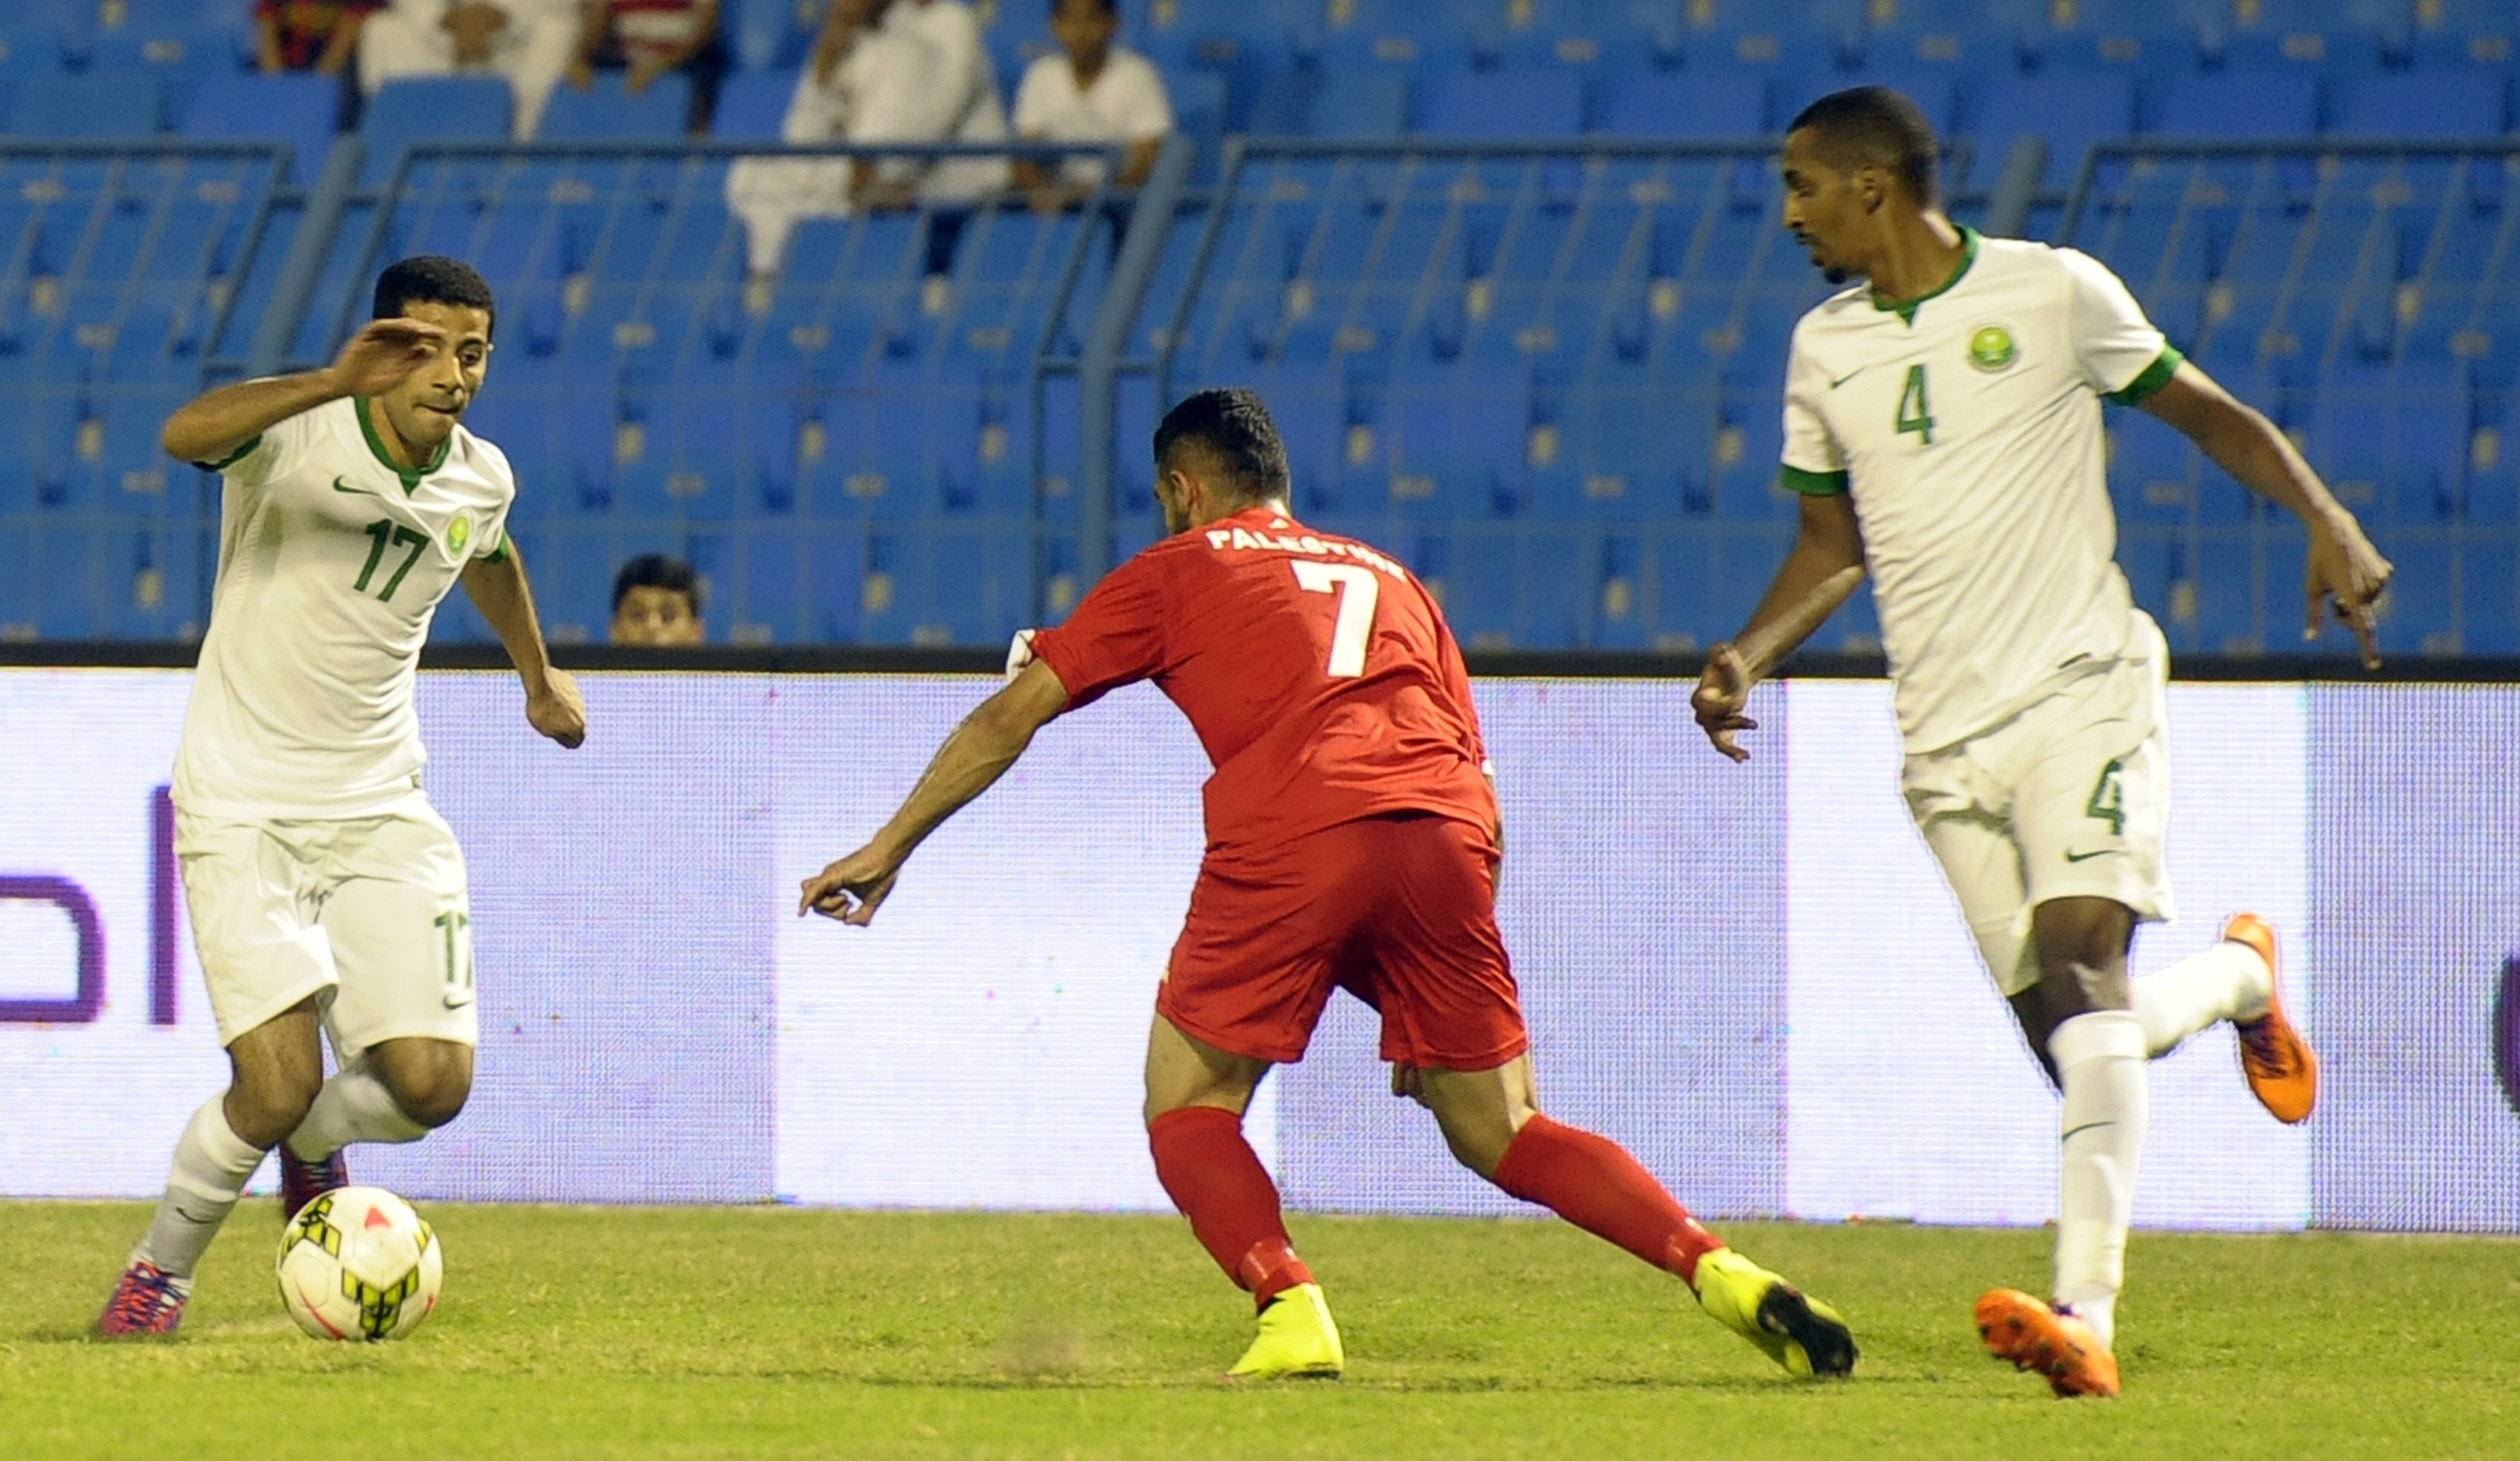 بالفيديو| السعودية تحقق فوزا صعبا على فلسطين في التصفيات المزدوجة لمونديال 2018 وكأس آسيا 